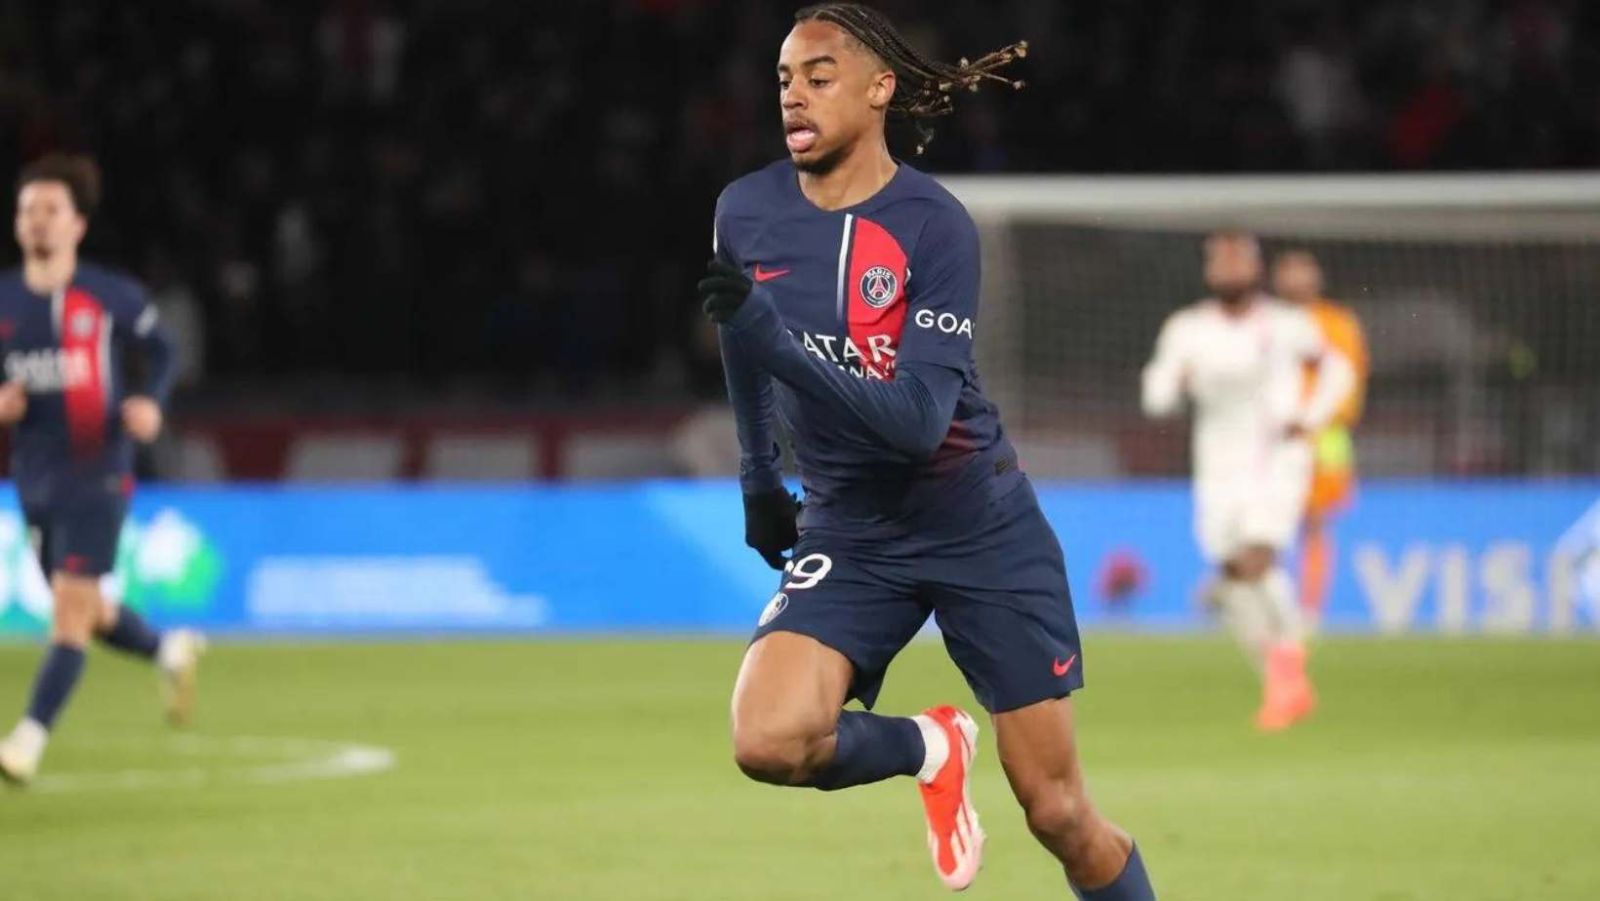 PSG - Le Havre (1-2) : Le résumé complet d'une première période surprise en Ligue 1